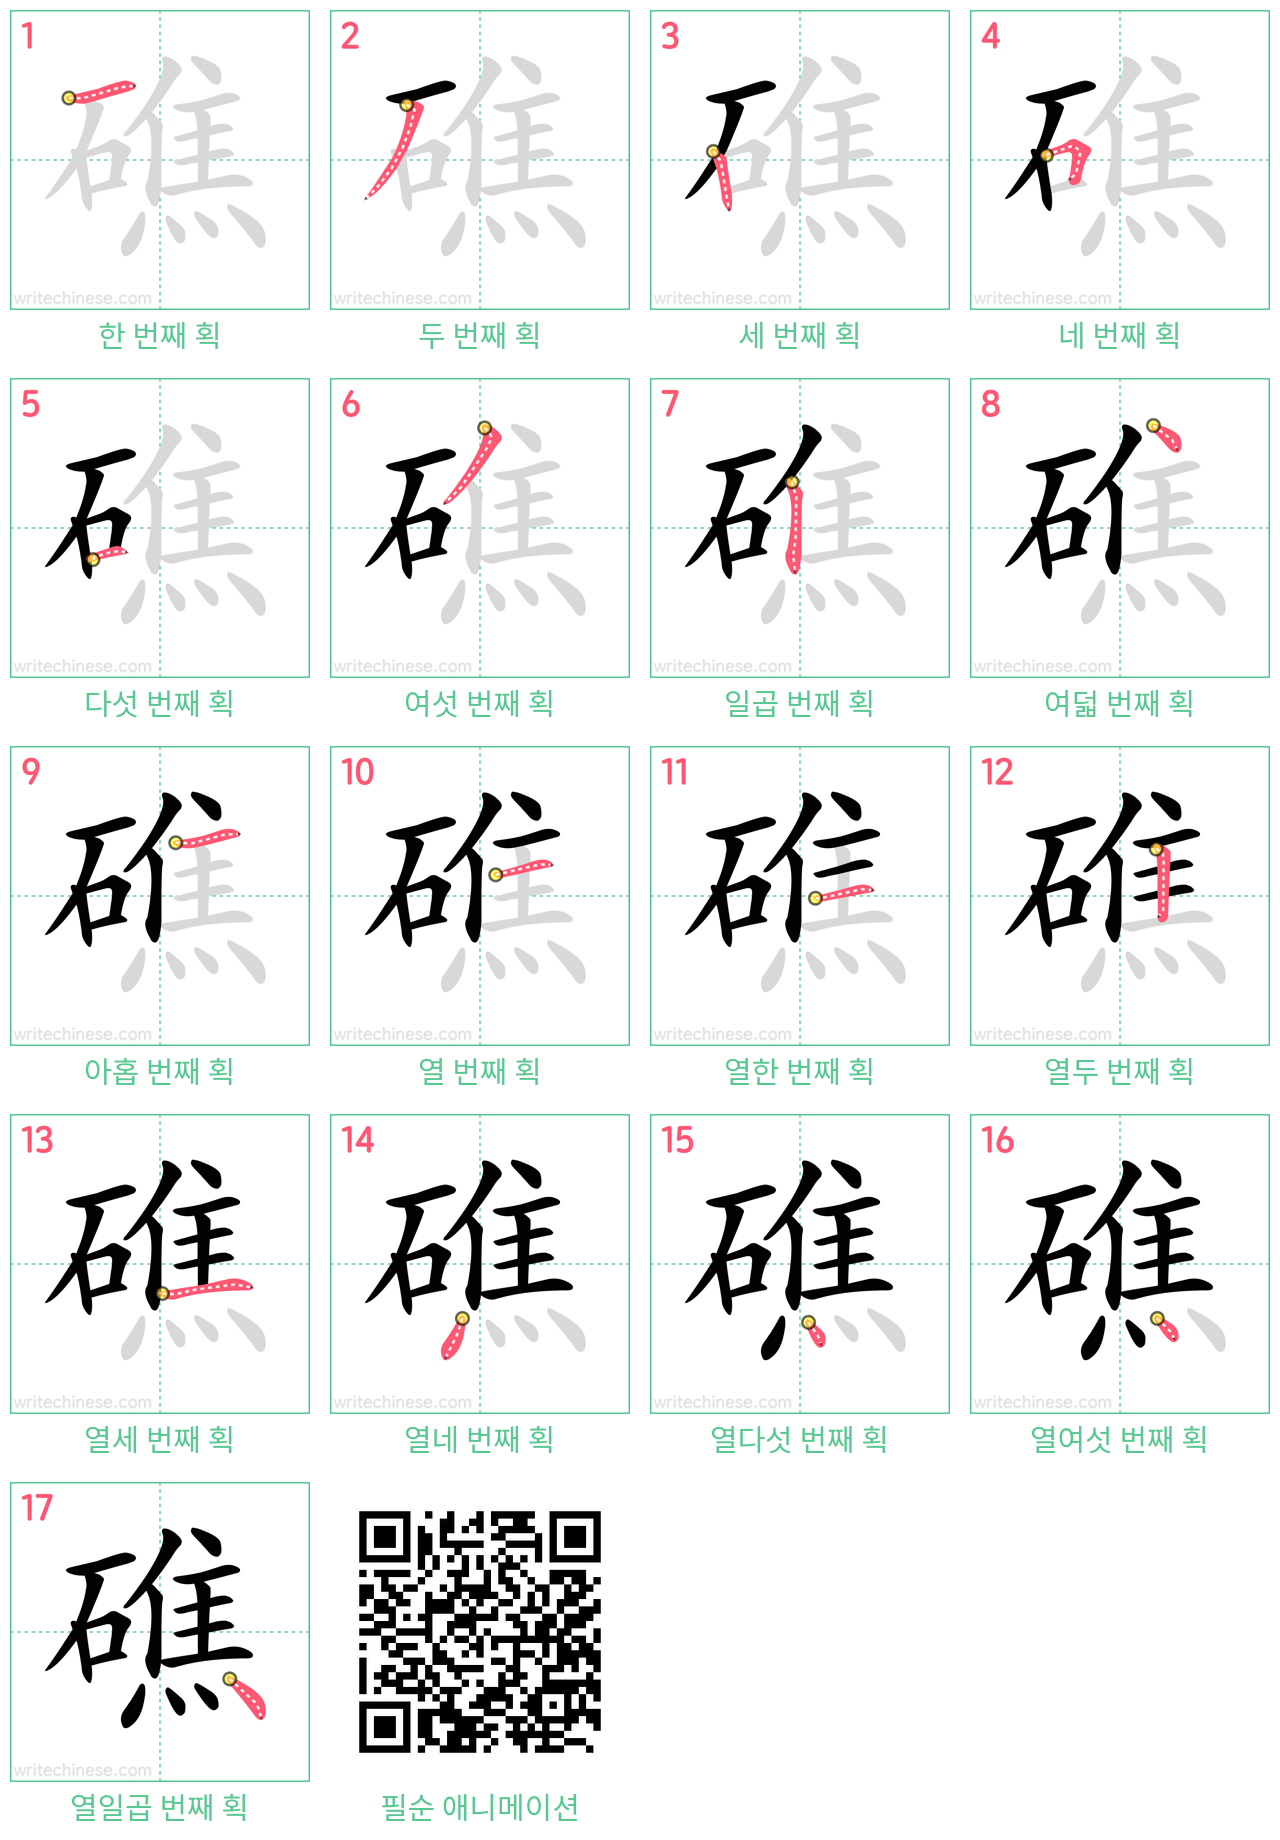 礁 step-by-step stroke order diagrams